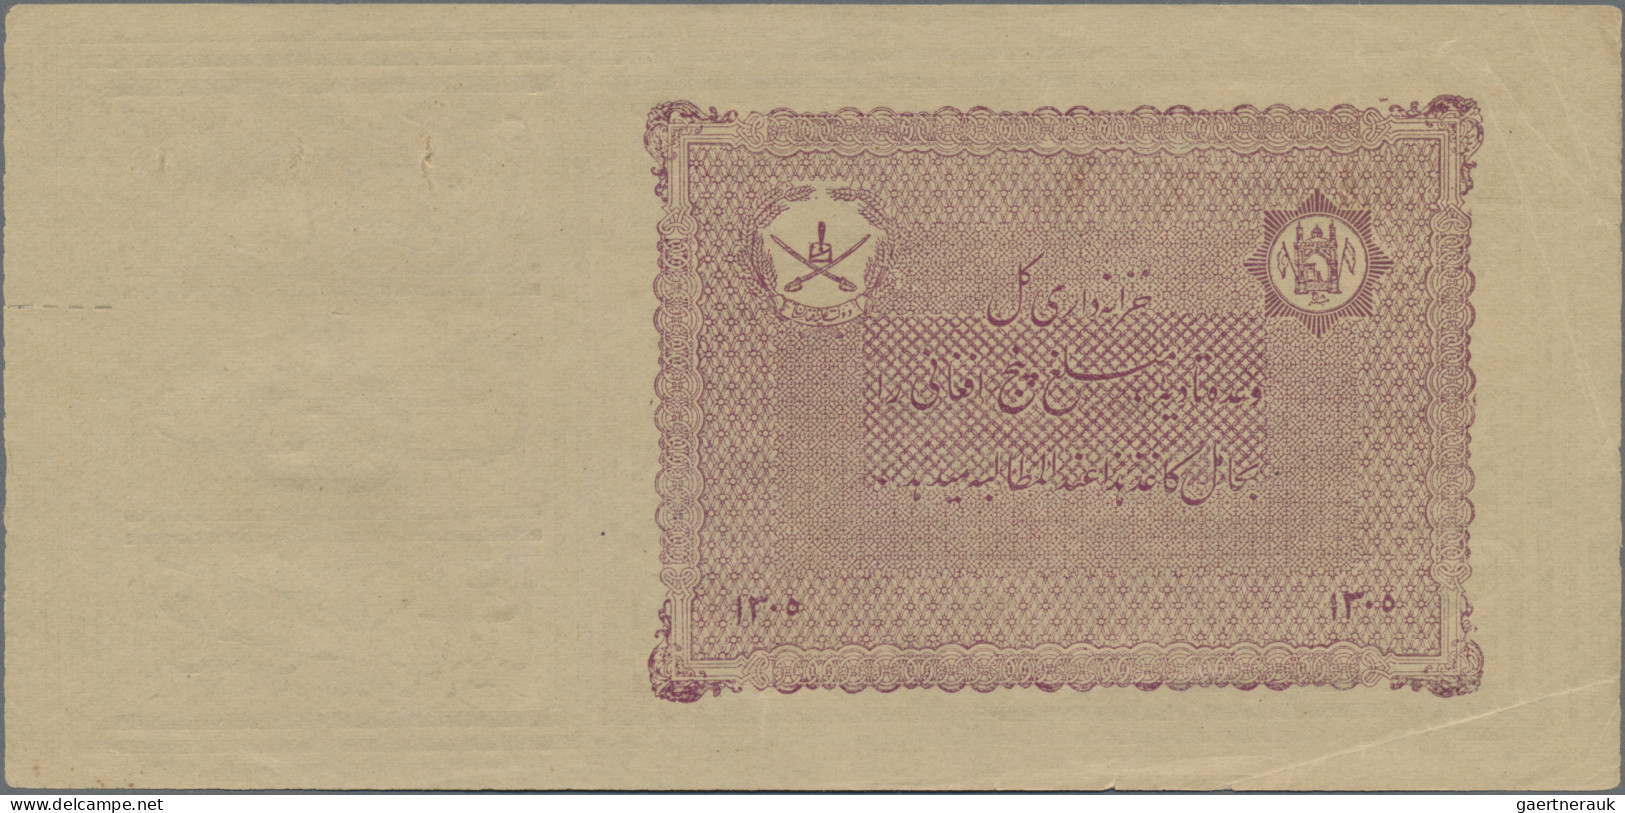 Afghanistan: 5 Afghanis ND(1926), Seldom Seen Early Note Type, Uniface Print, Ne - Afghanistan